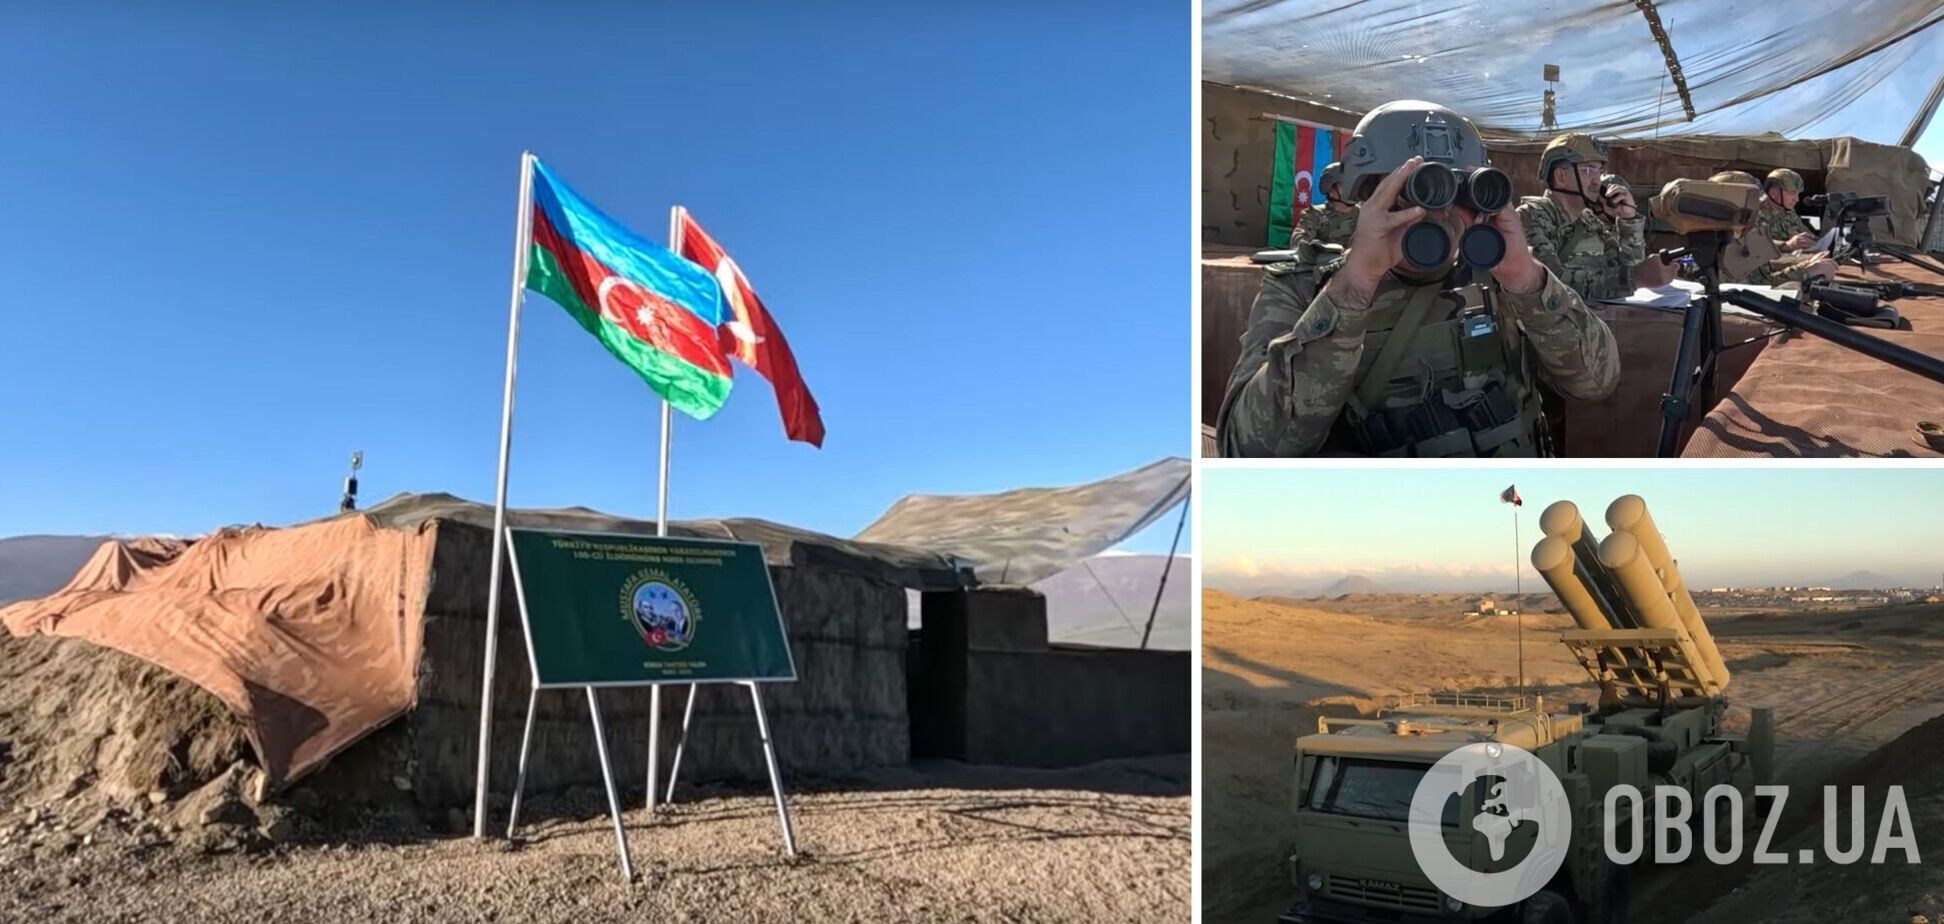 Азербайджан проводит в освобожденном Карабахе совместные военные учения с Турцией. Фото и видео